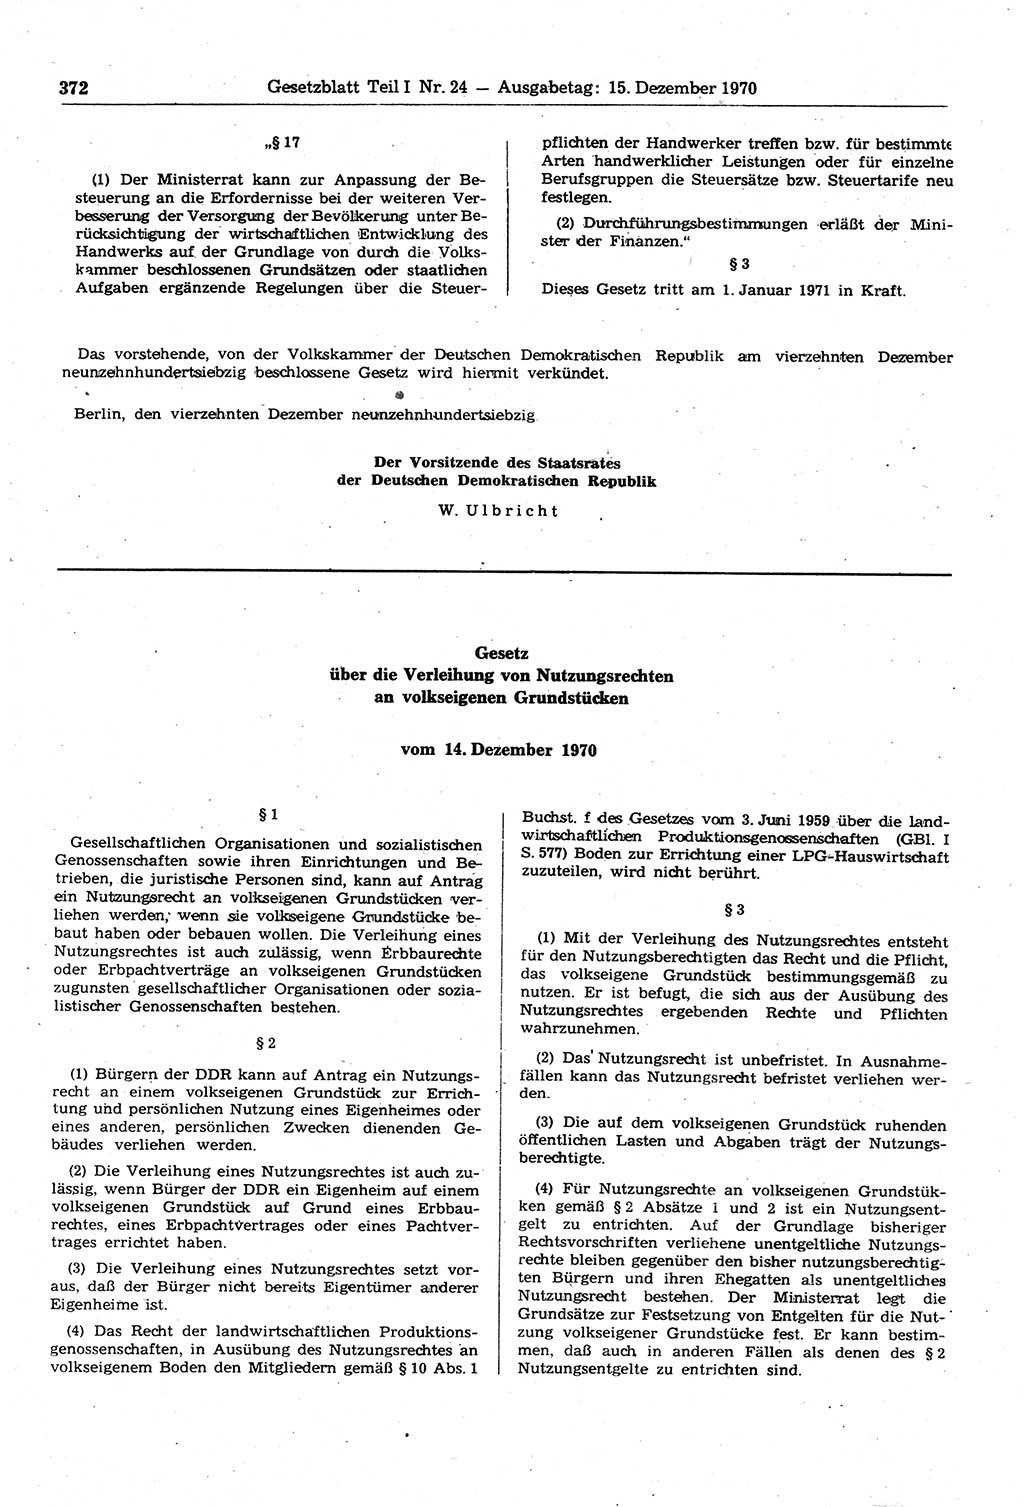 Gesetzblatt (GBl.) der Deutschen Demokratischen Republik (DDR) Teil Ⅰ 1970, Seite 372 (GBl. DDR Ⅰ 1970, S. 372)